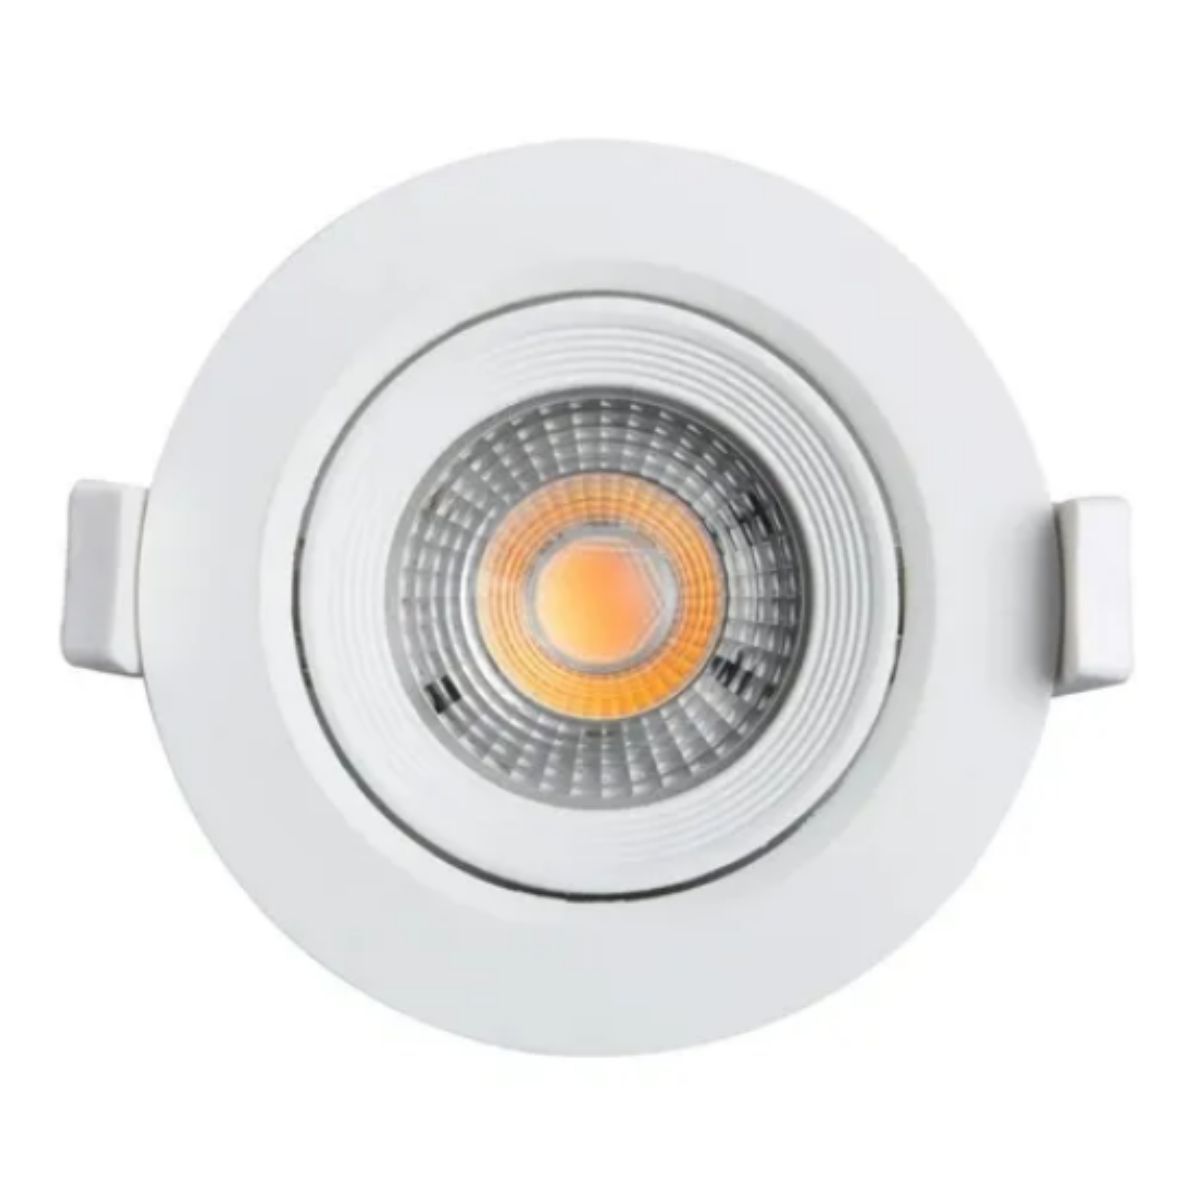 Spot LED Embutir Direcionável Redondo 3W Bivolt 3000K Branco Quente Galaxy  - Ciano Iluminação